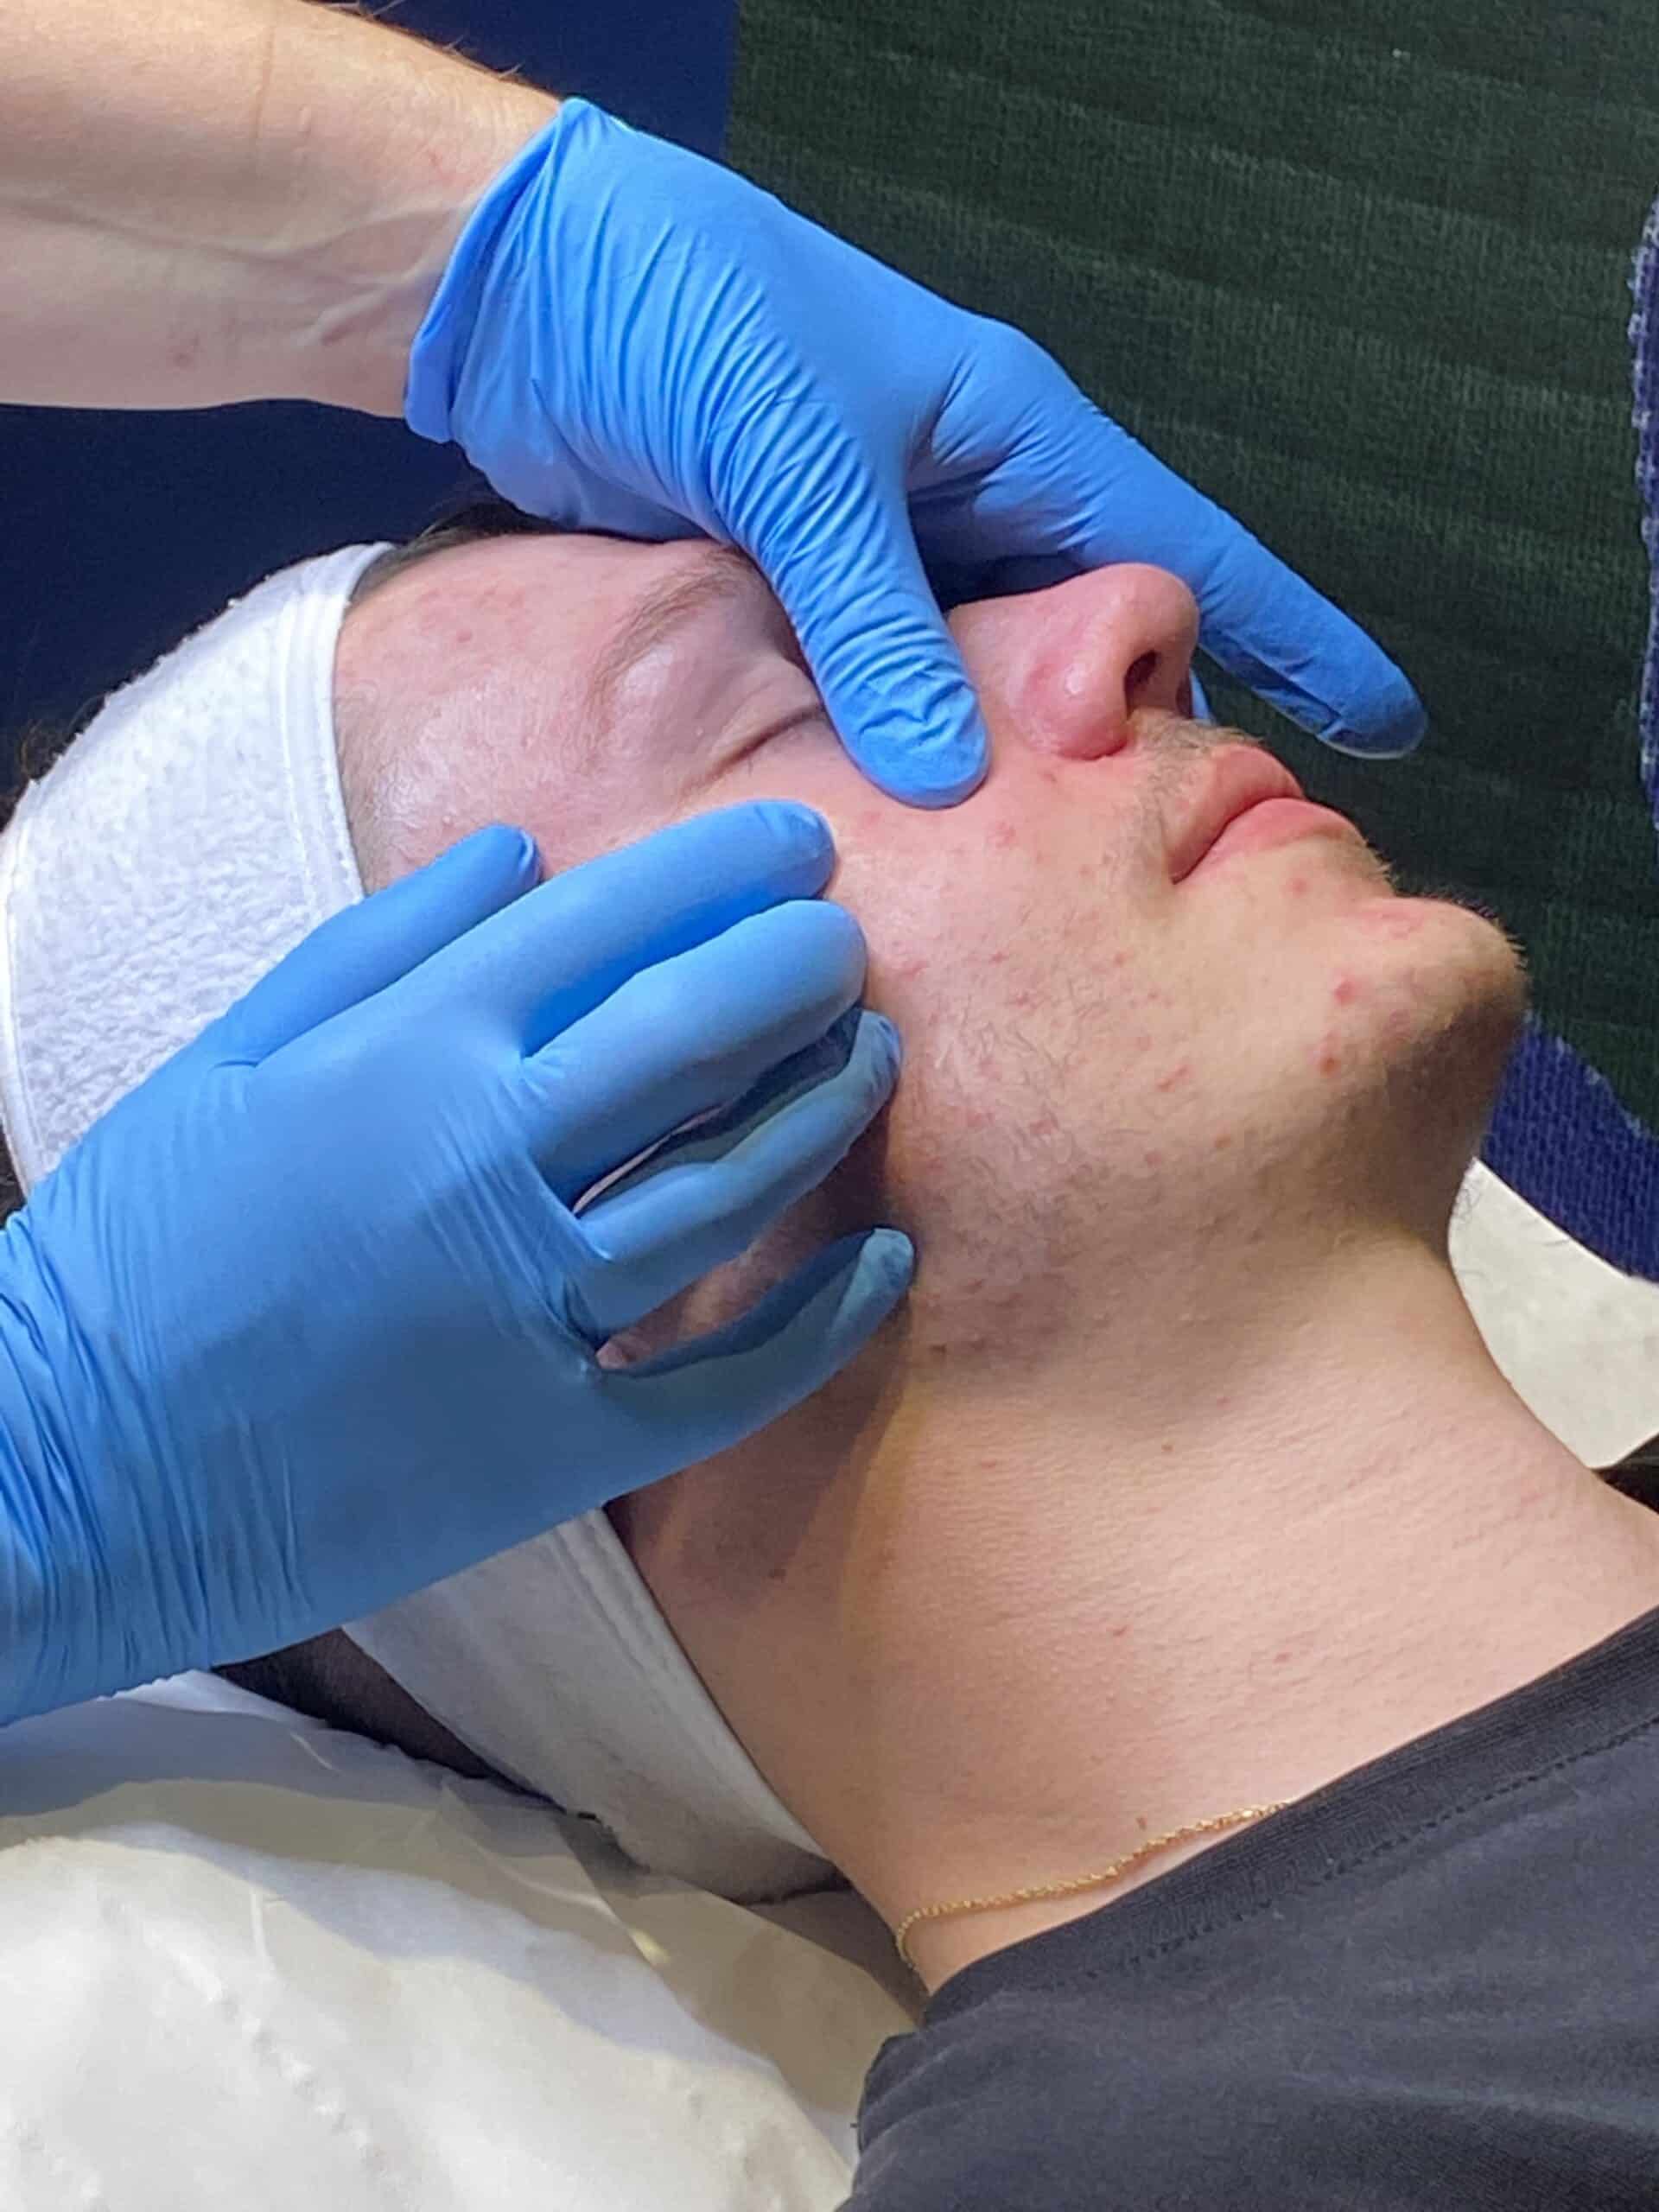 Nettoyage de peau médical sur jeune patient atteint d'acné.